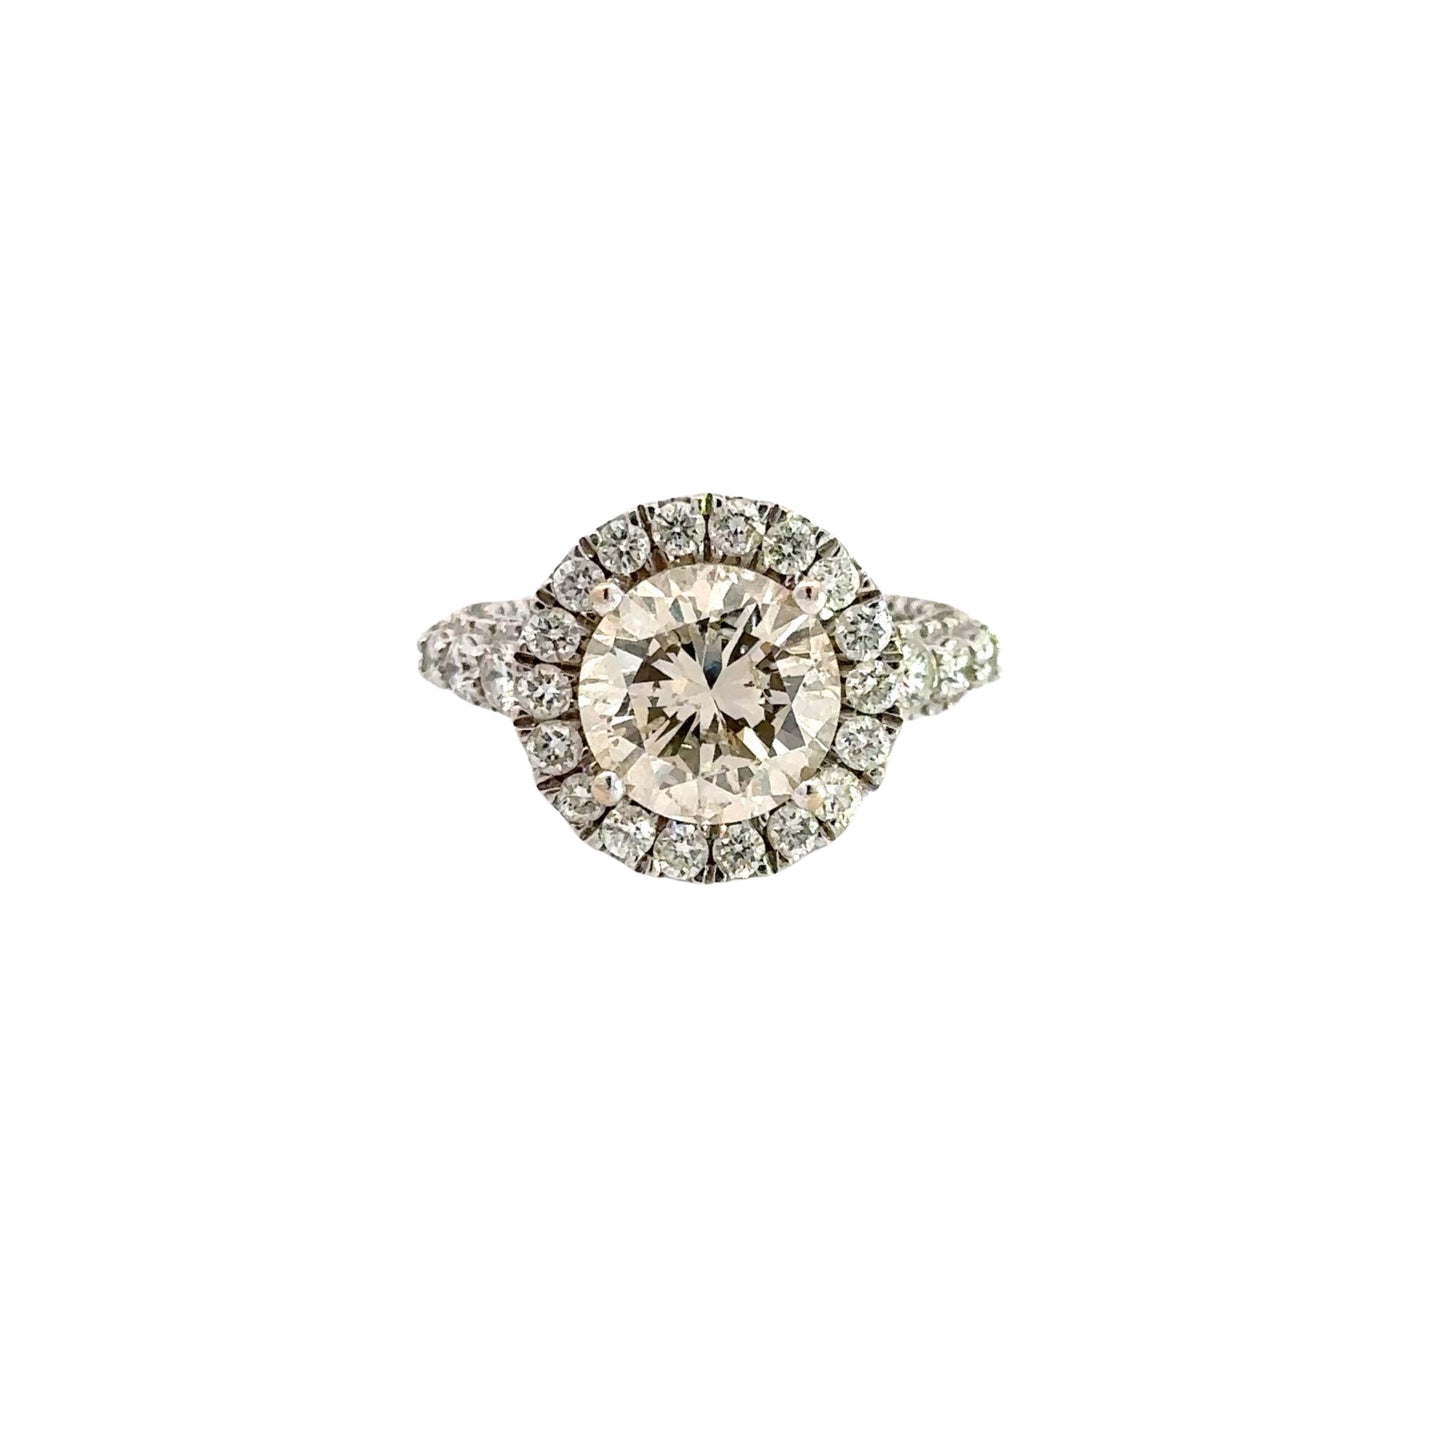 2.25 Carat Round Center-Stone Diamond with 18 round diamonds around center-stone in halo